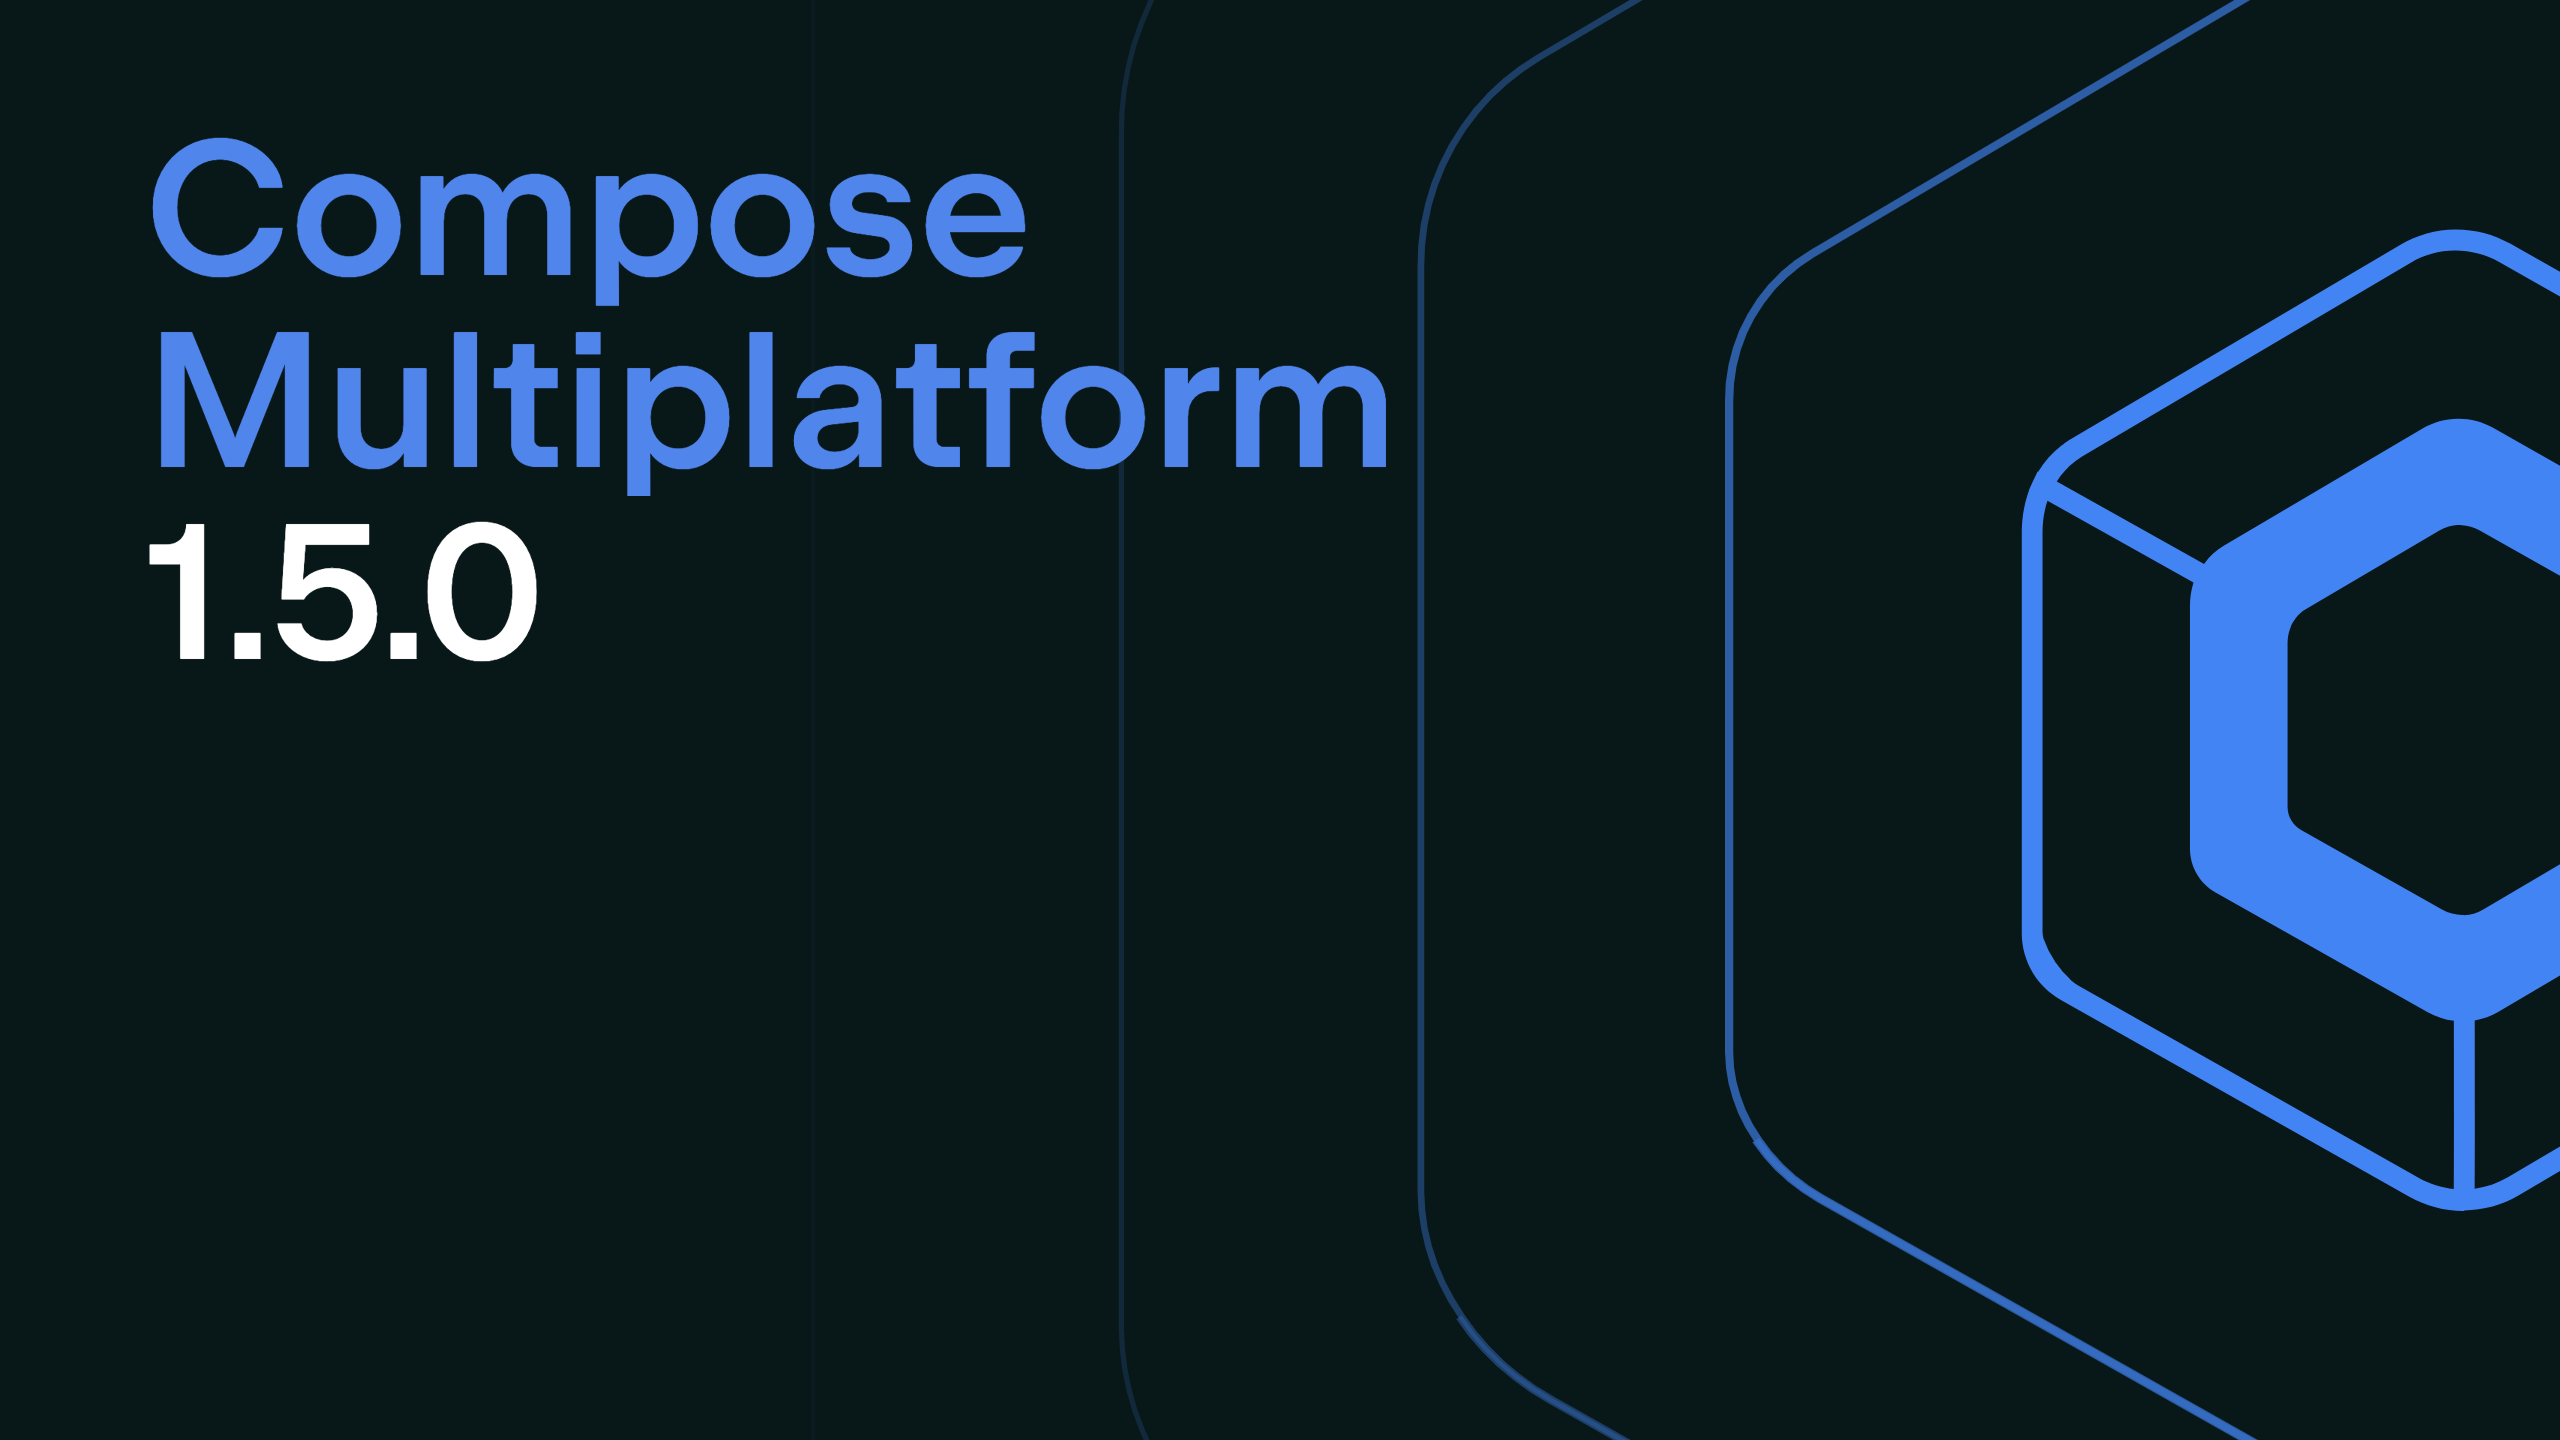 Compose Multiplatform 1.5.0 Release